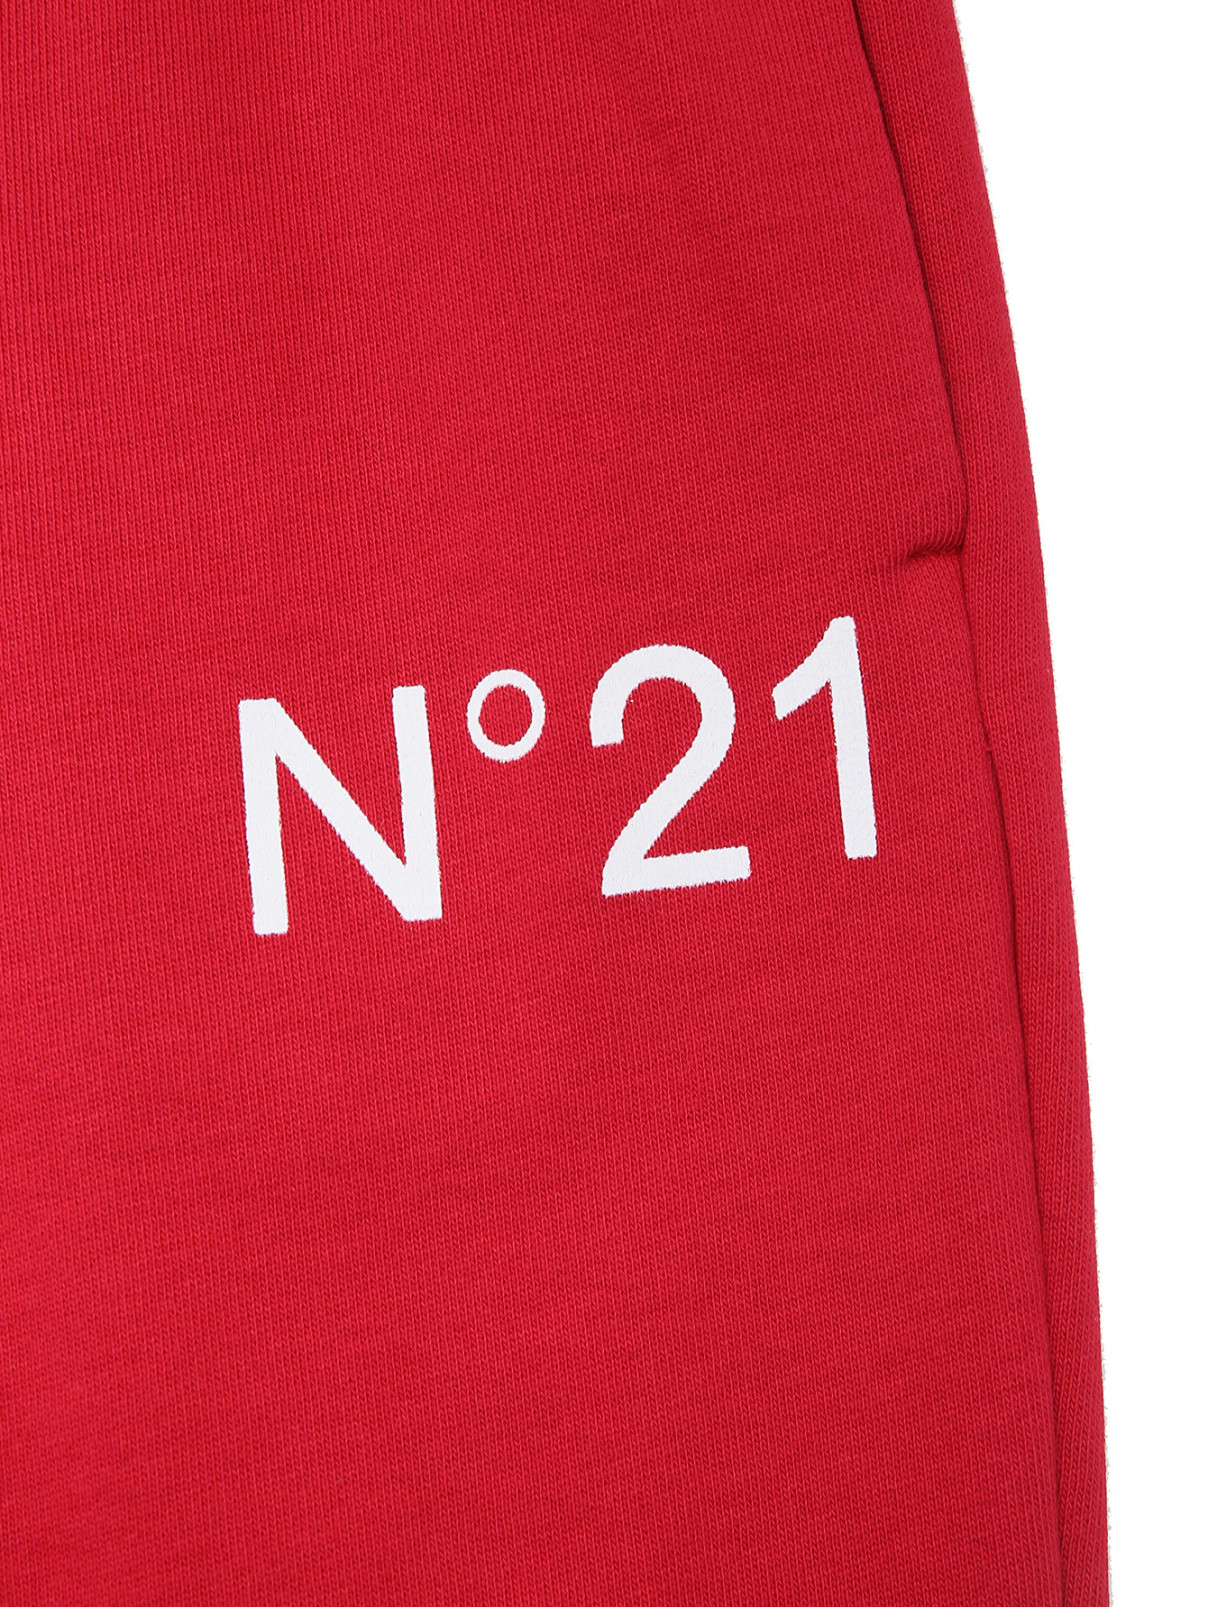 Брюки с принтом на резинке N21  –  Деталь  – Цвет:  Красный